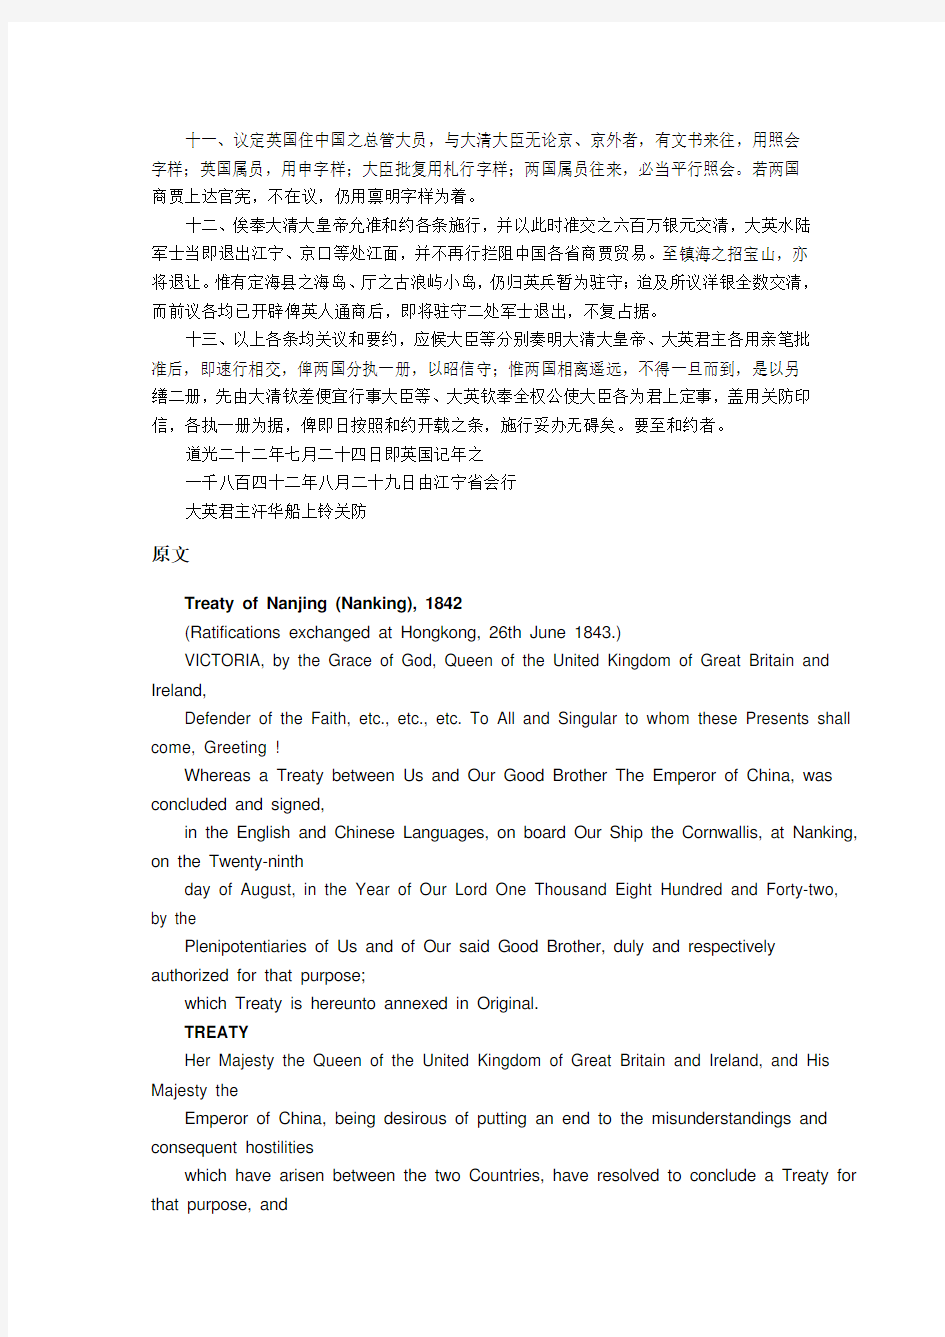 南京条约(中英文对照)